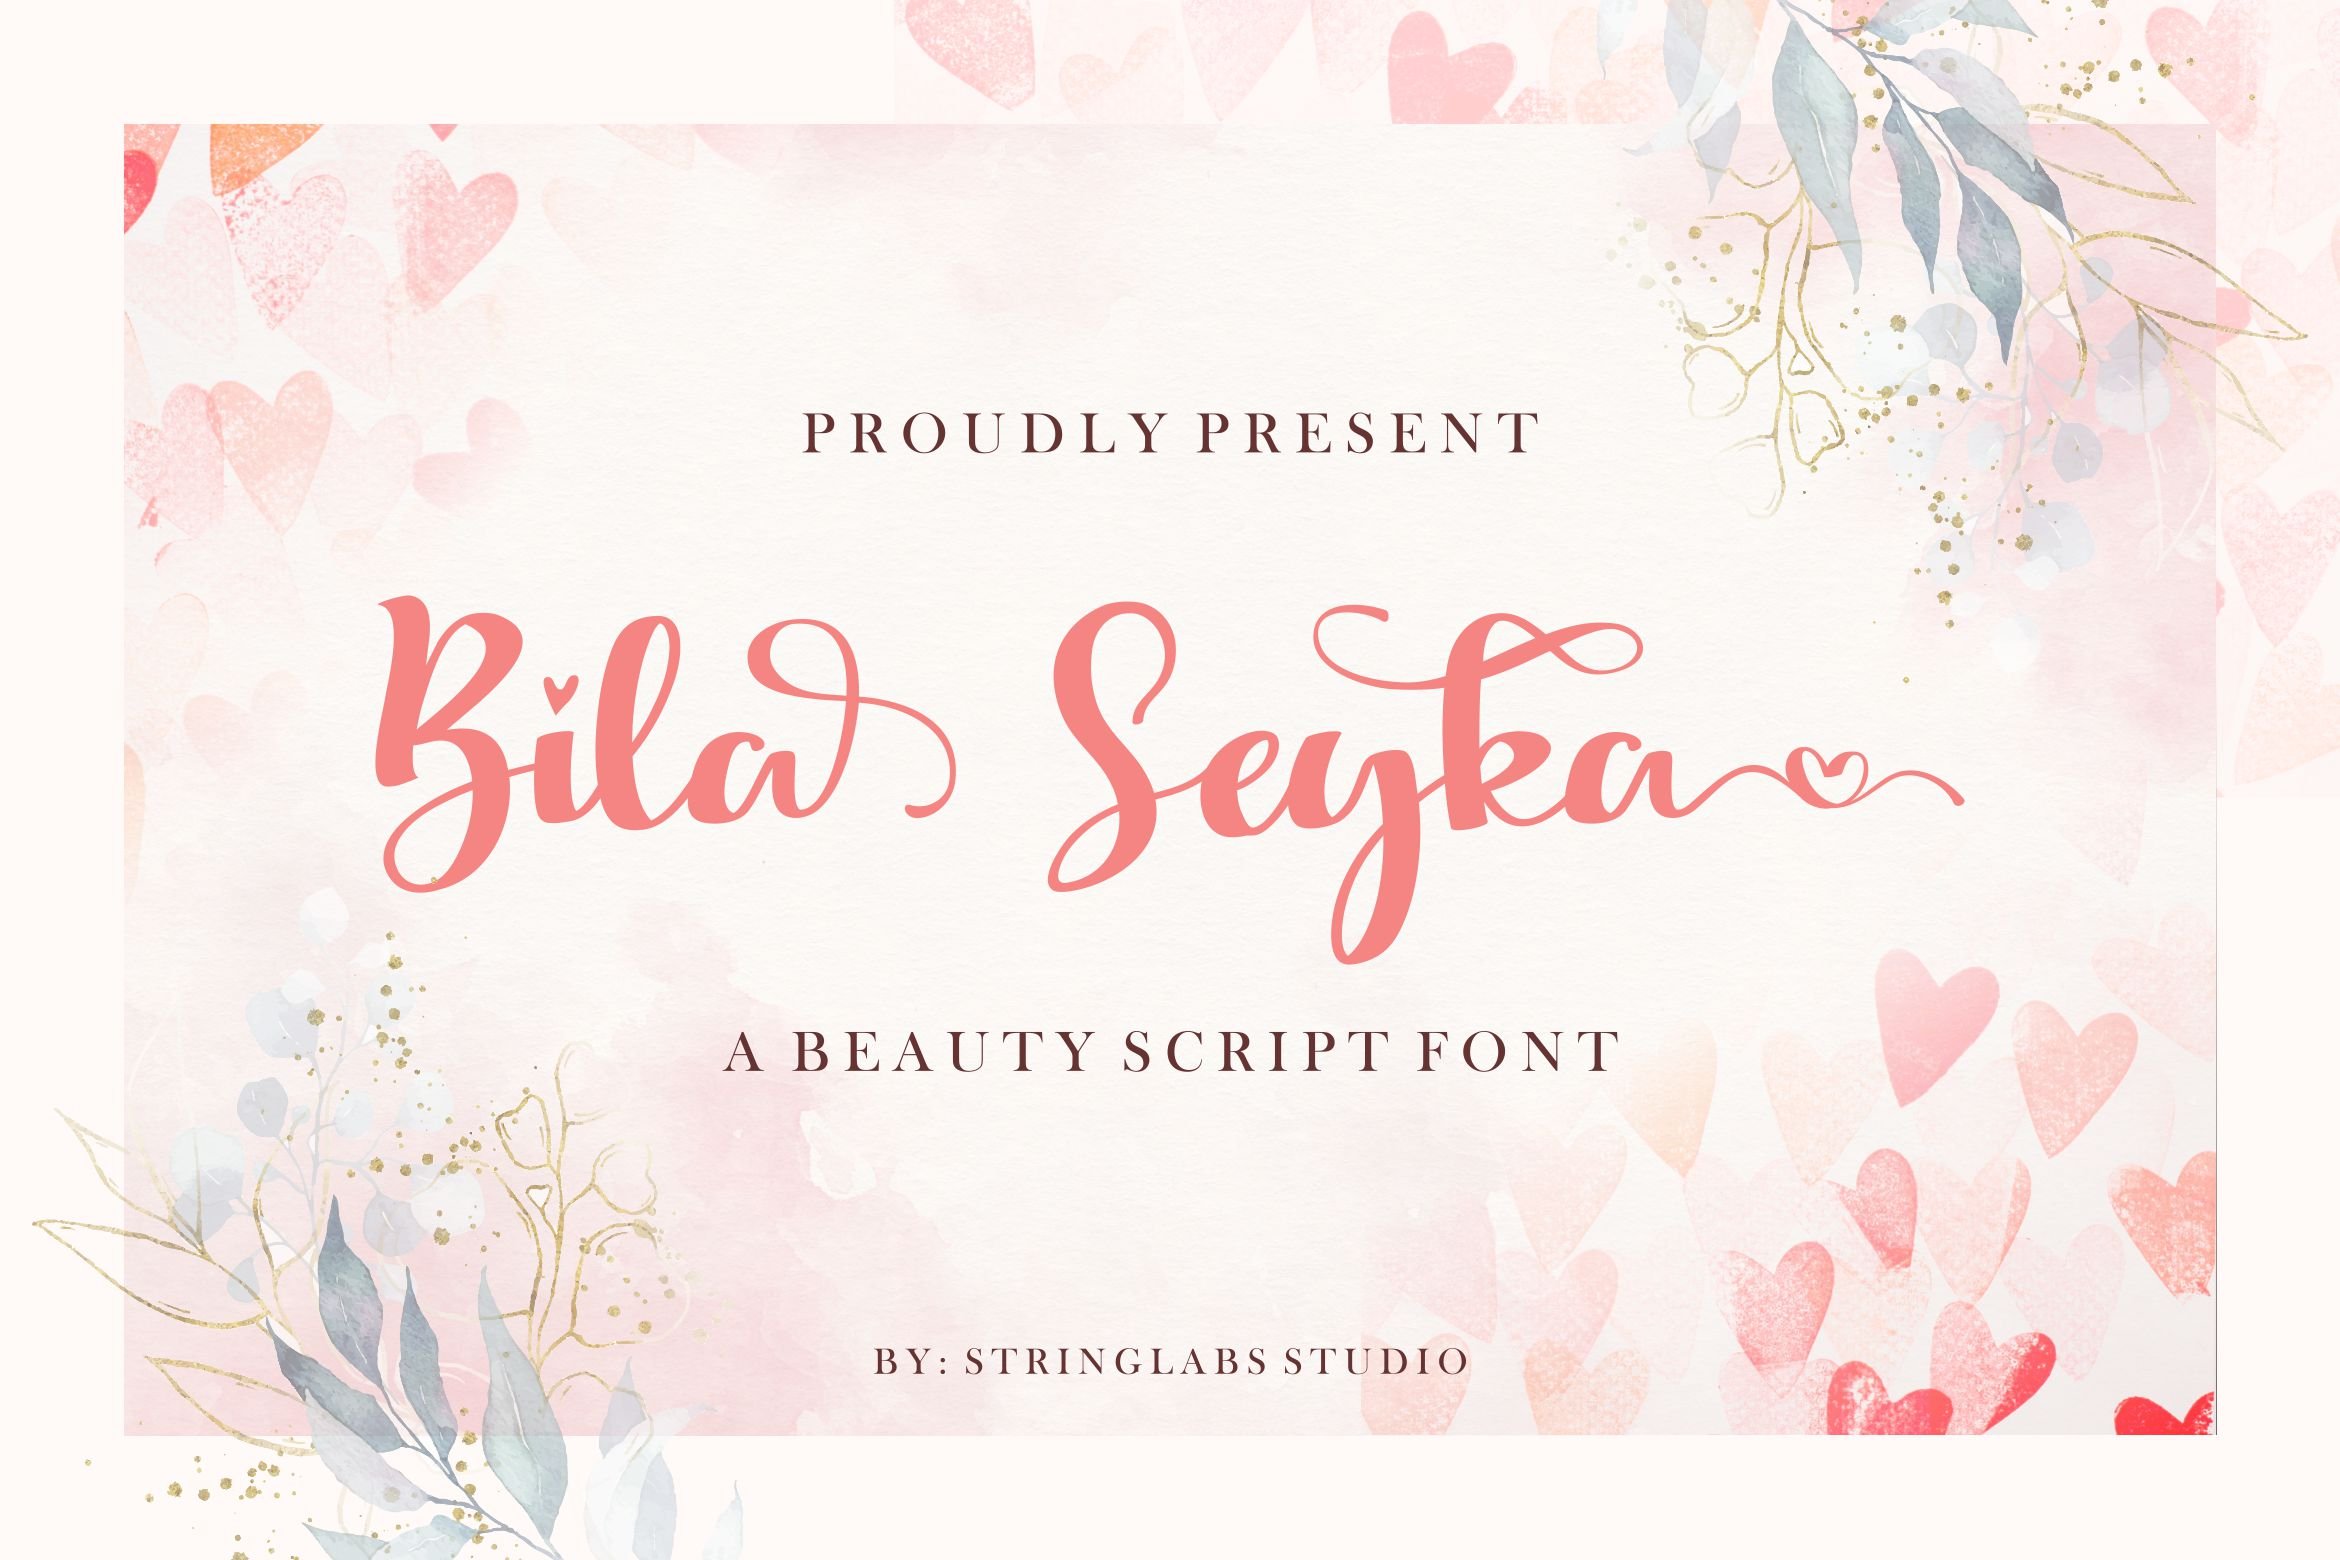 Bila Seyka - Lovely Script Font cover image.